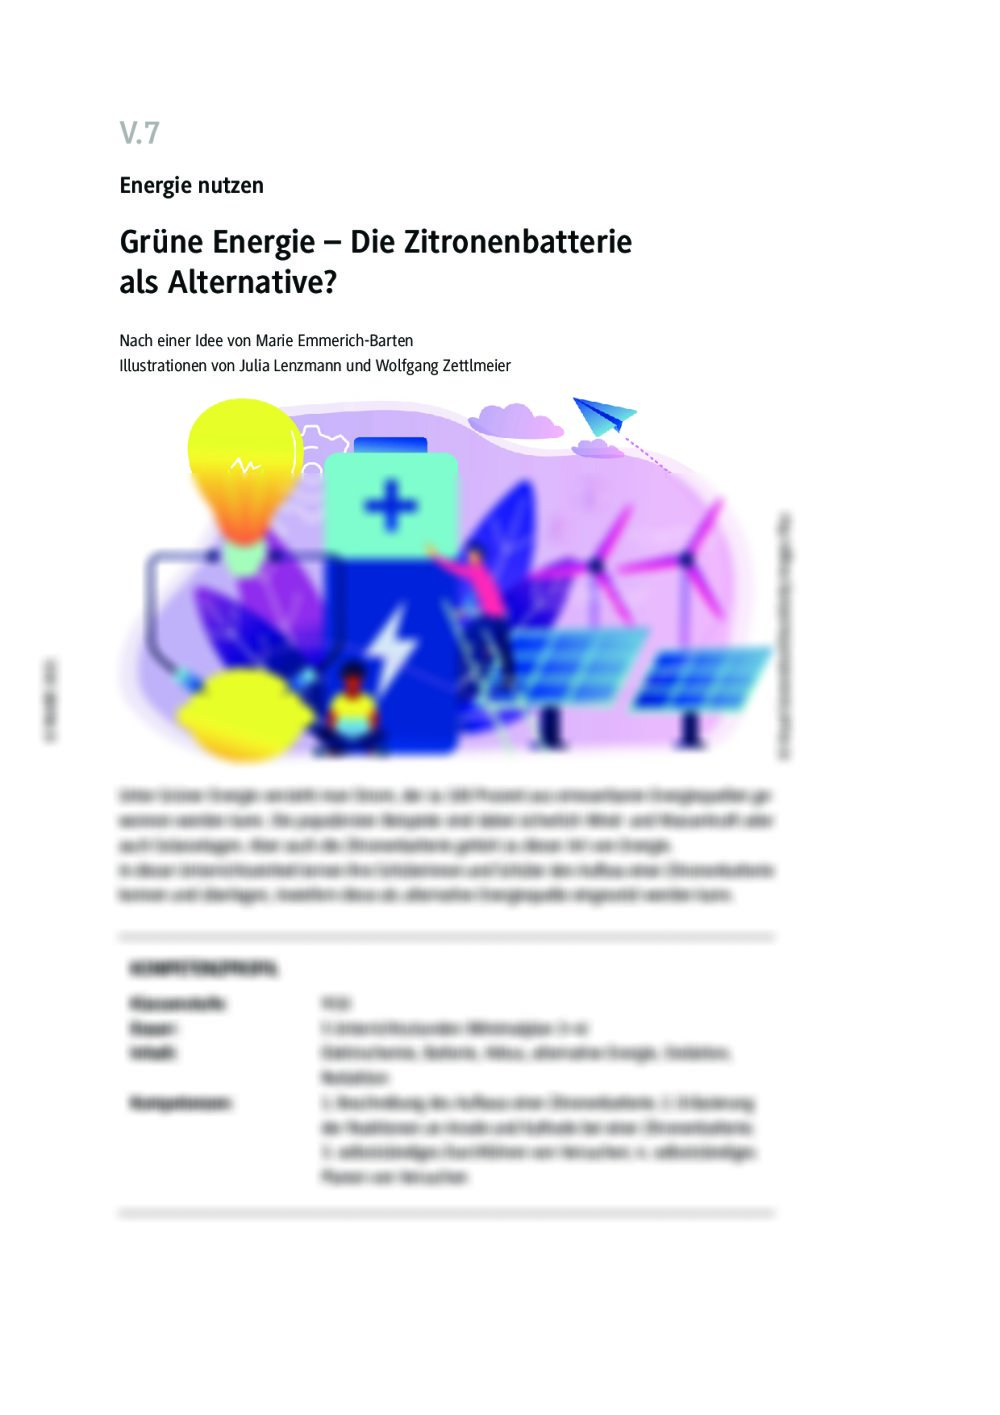 Grüne Energie mit der Zitronenbatterie - Seite 1